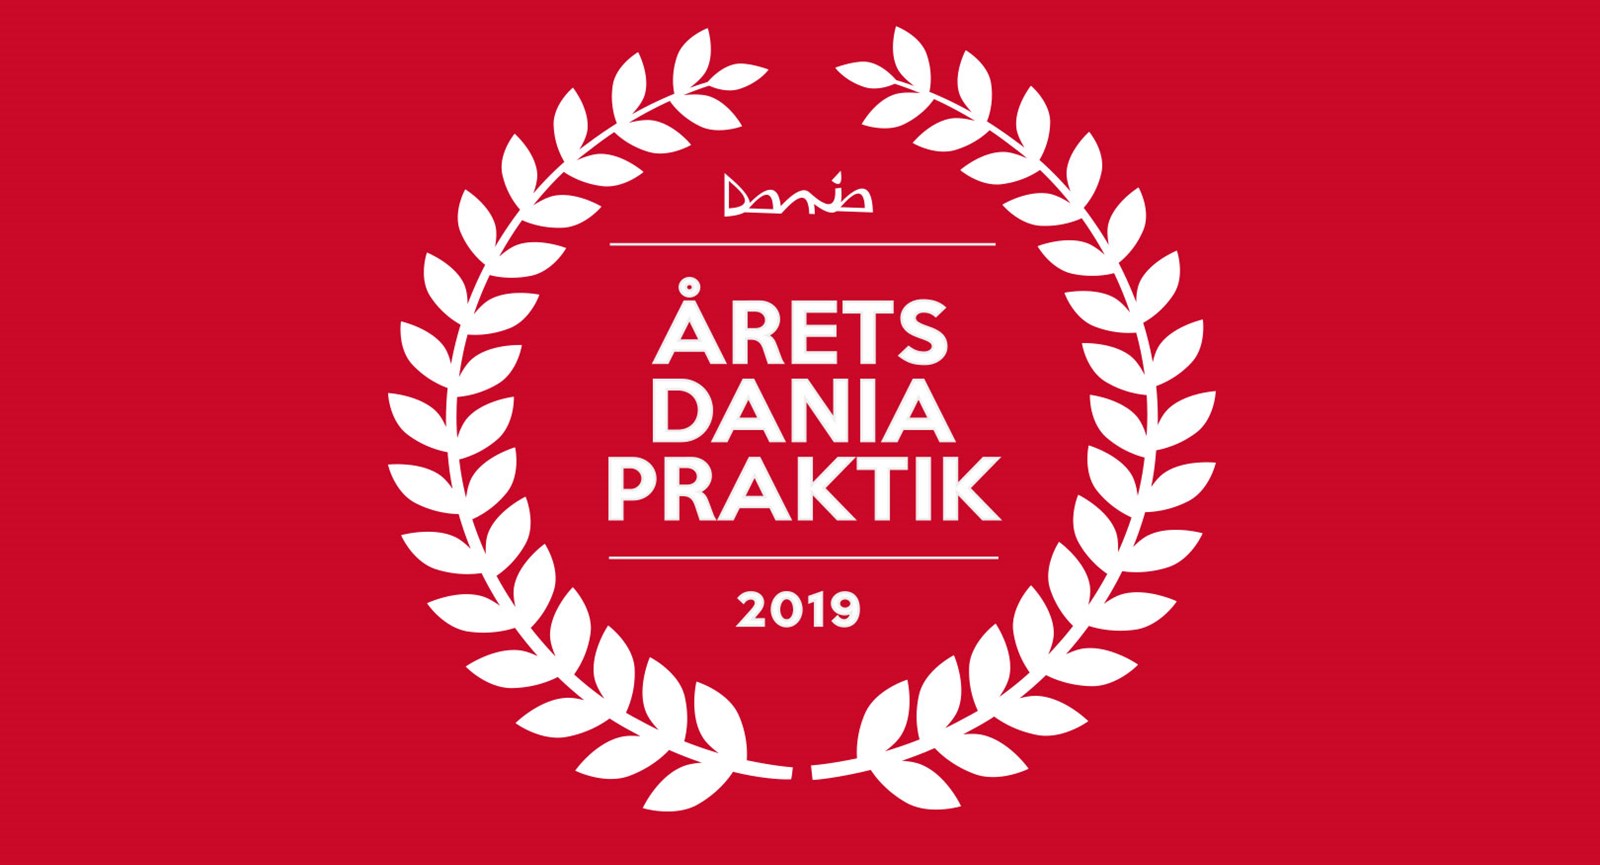 Logo for praktikkonkurrencen med en bladkrans om teksten Dania Årets Dania Praktik 2019